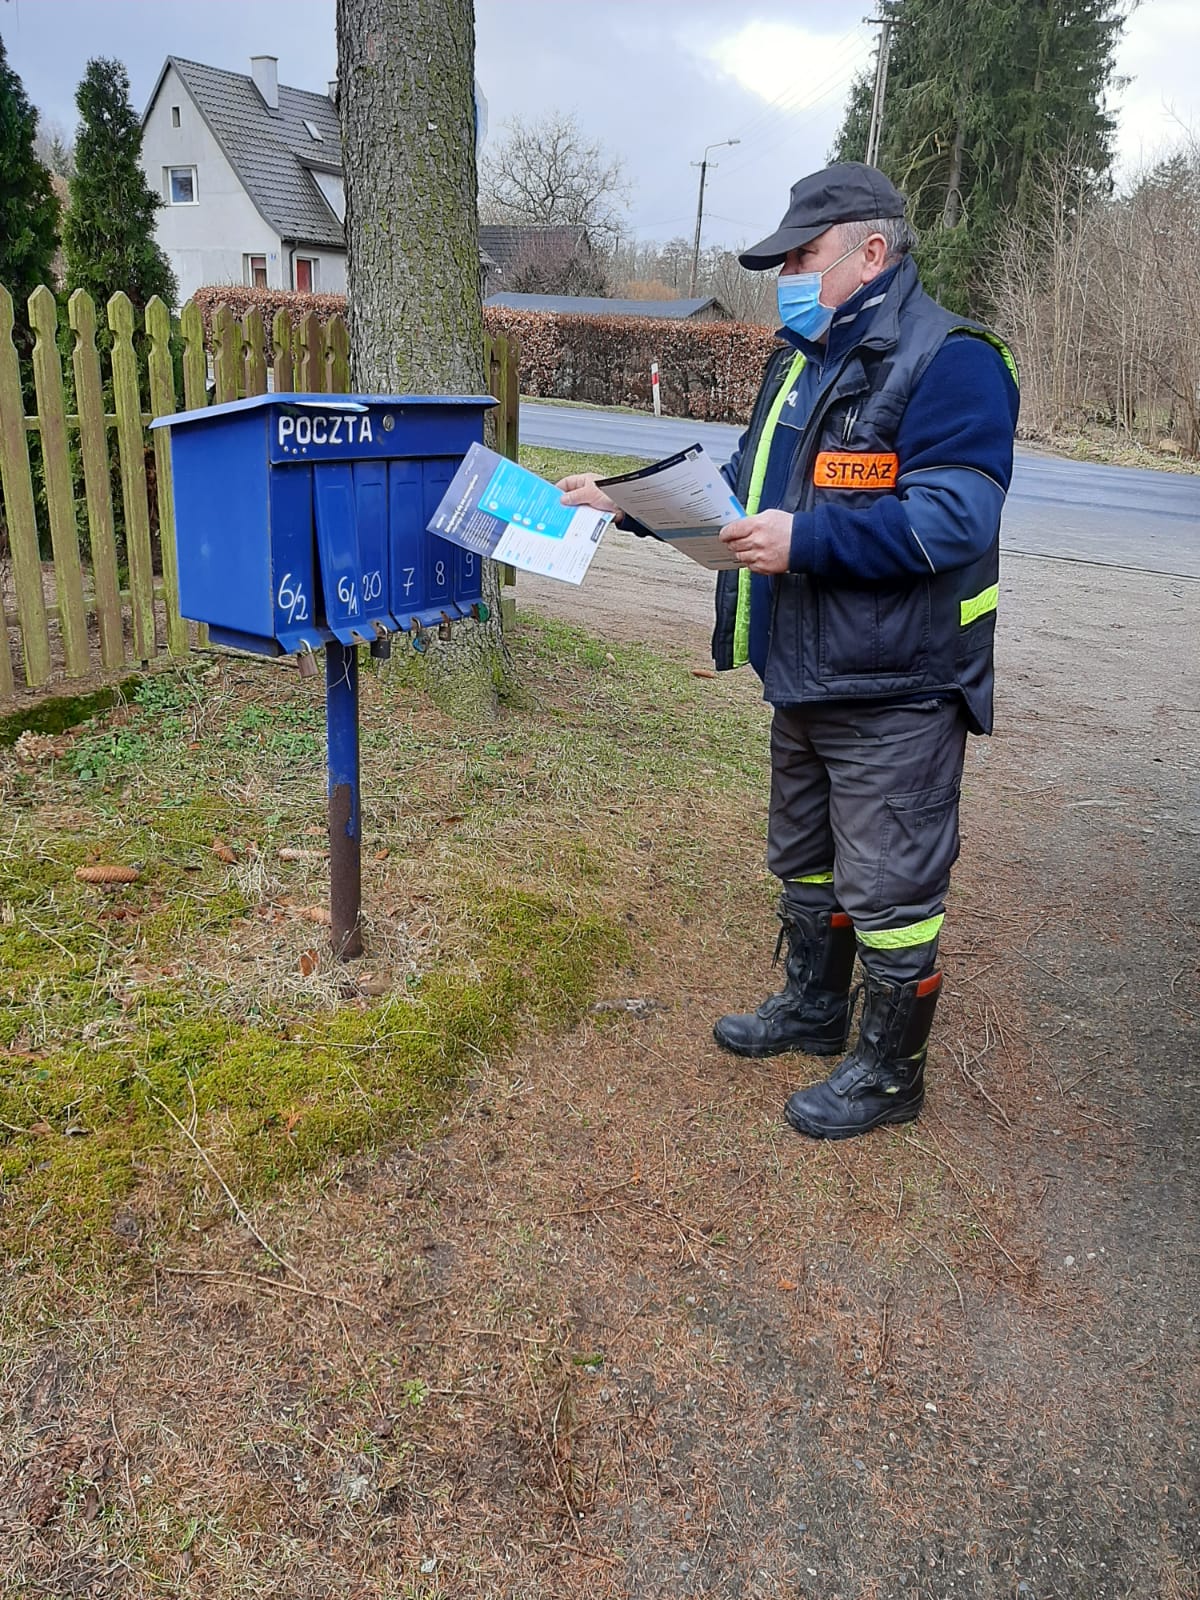 Zdjęcie przedstawia strażaka wkładającego do niebieskich skrzynek pocztowych ulotki.